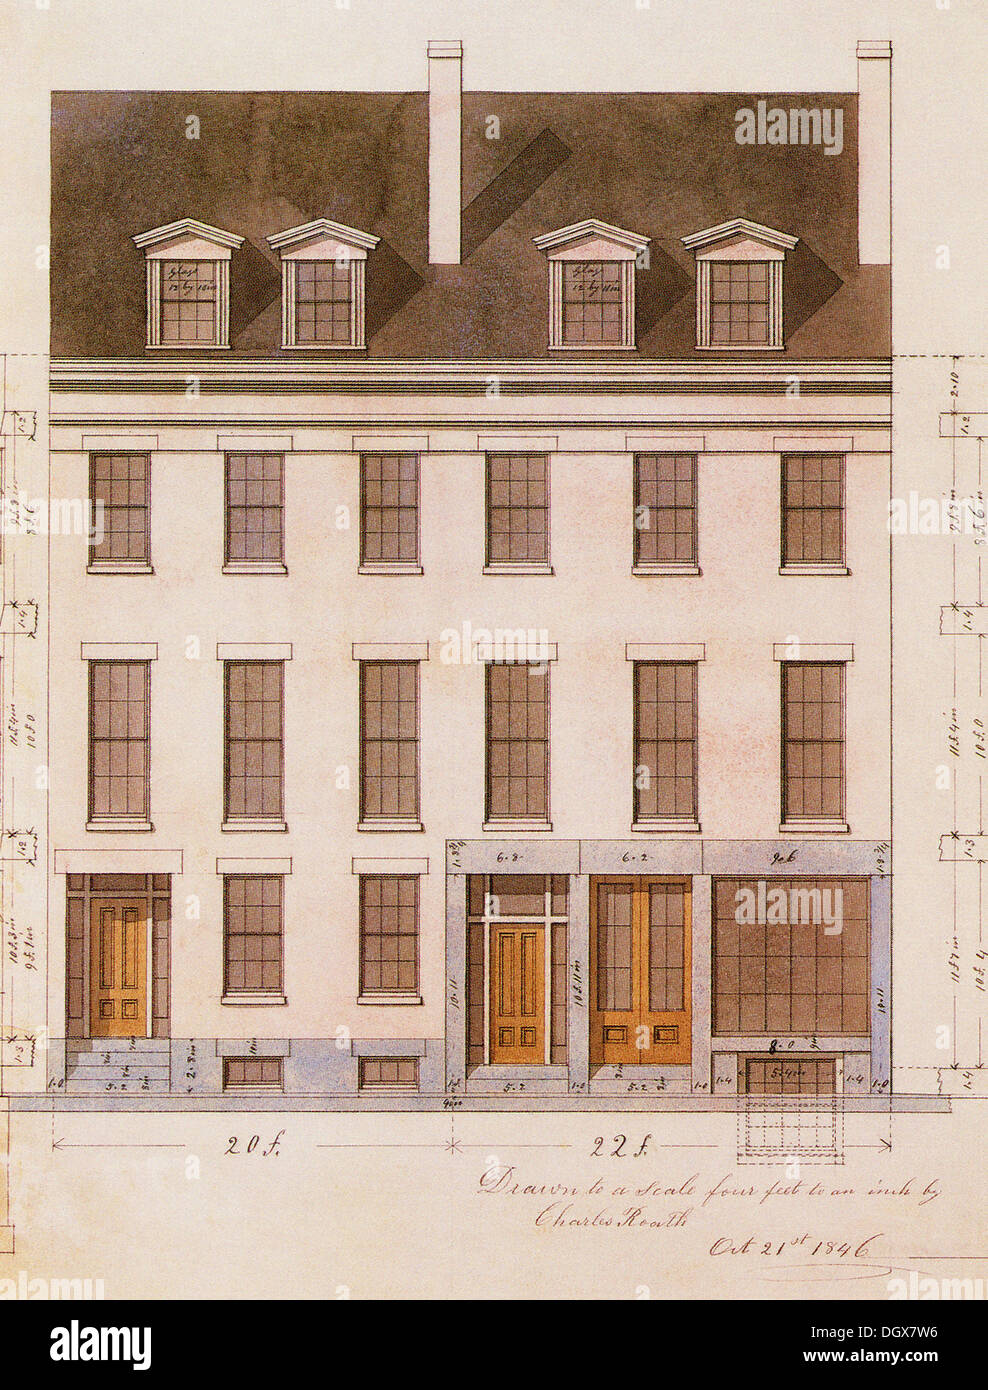 Plan de maison historique, USA, 1846 Banque D'Images